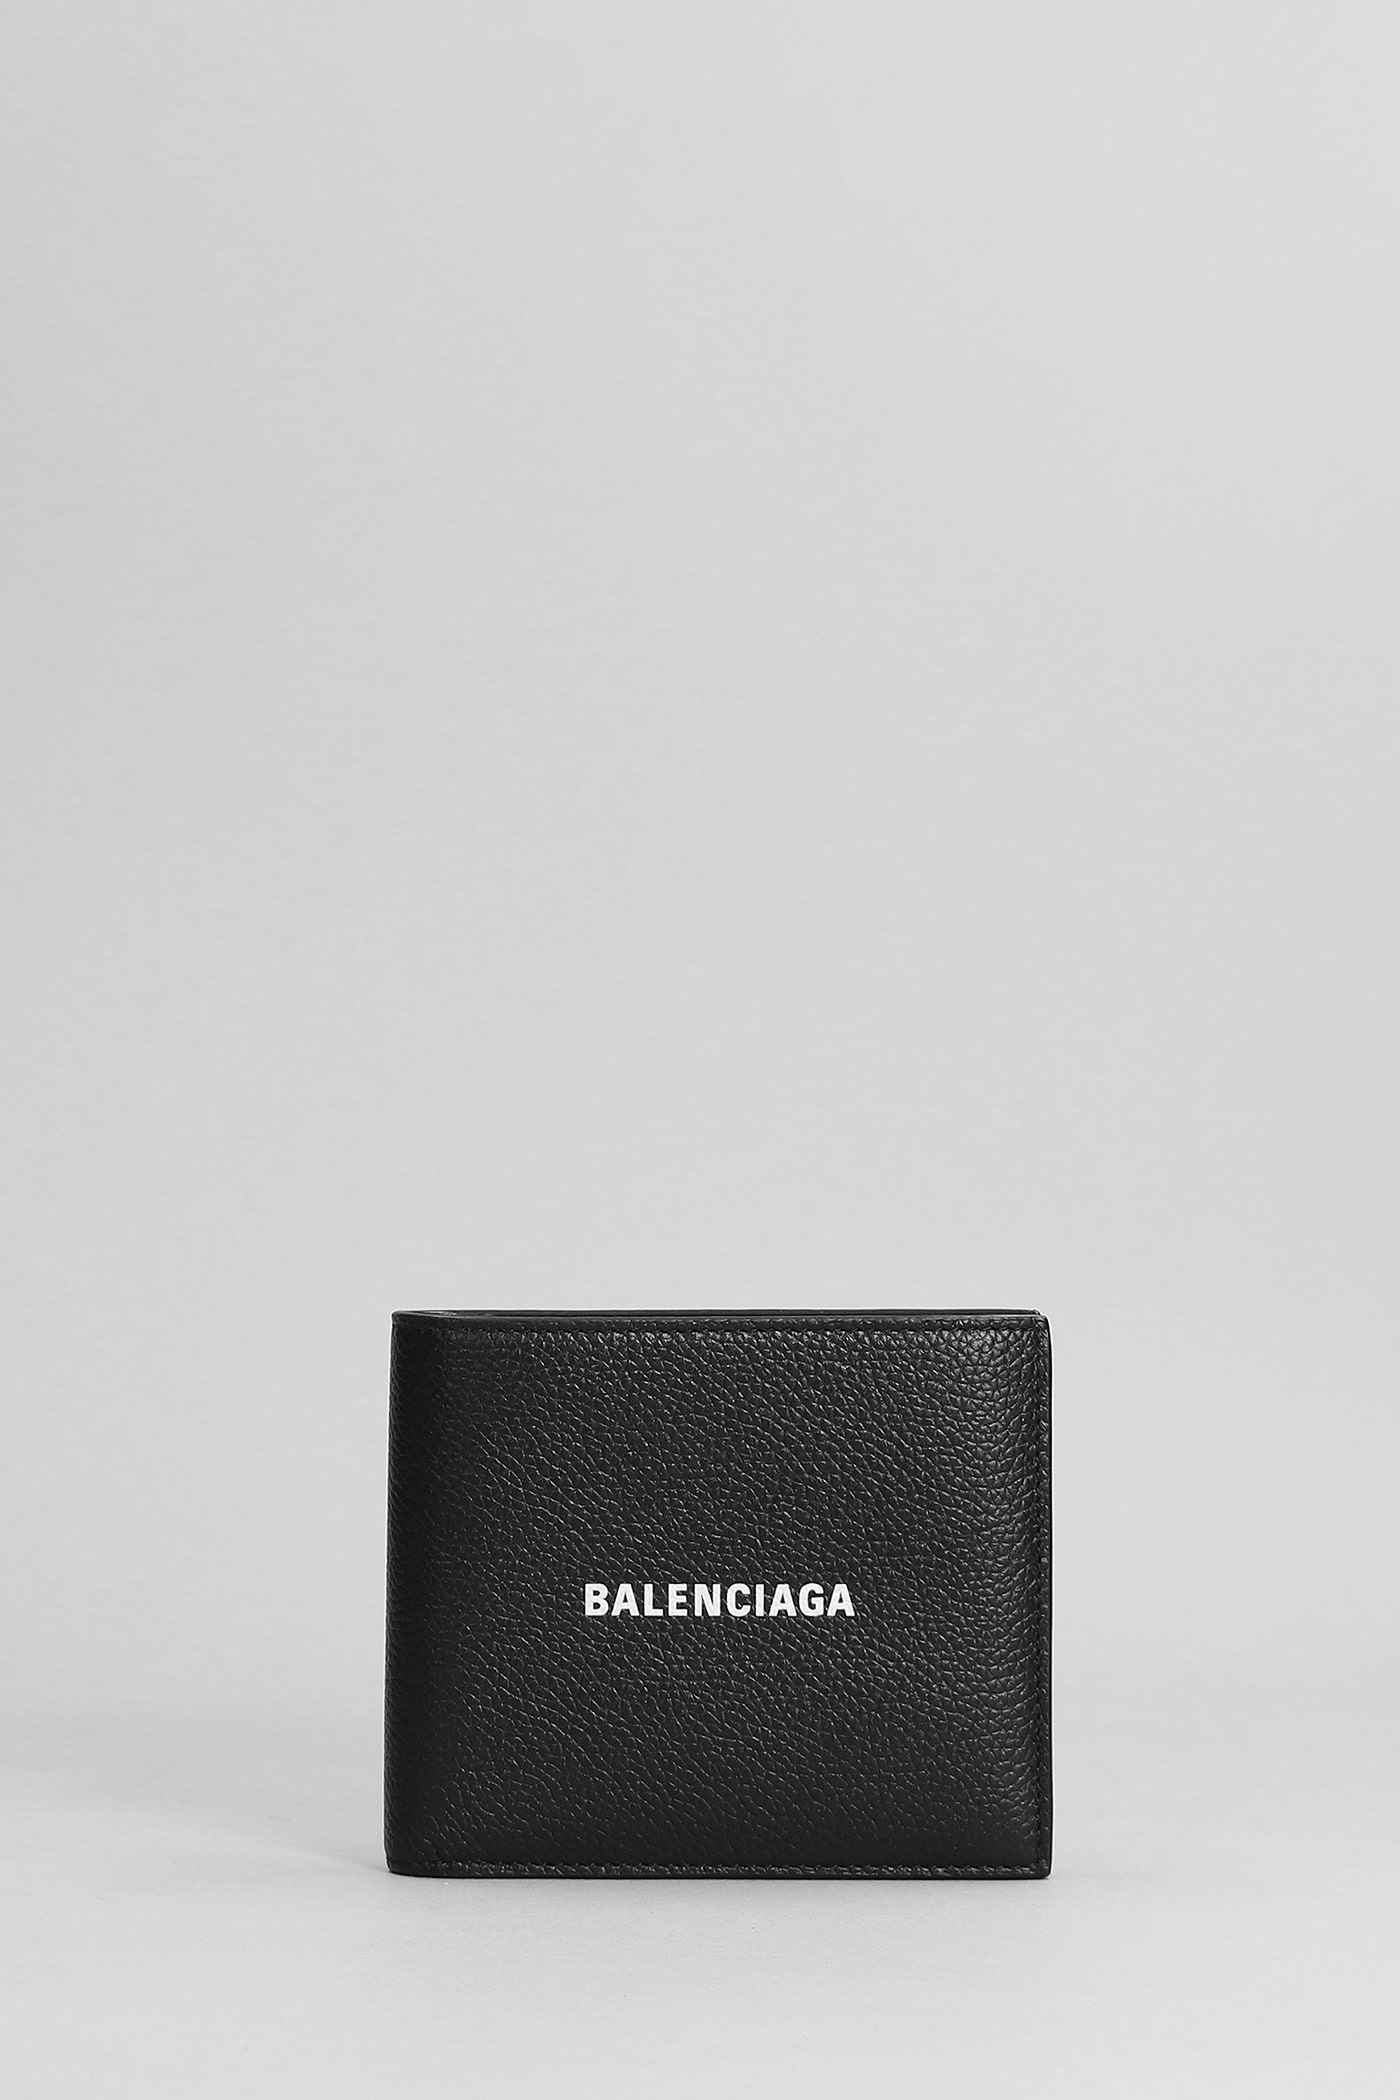 Balenciaga Wallet In Black | italist